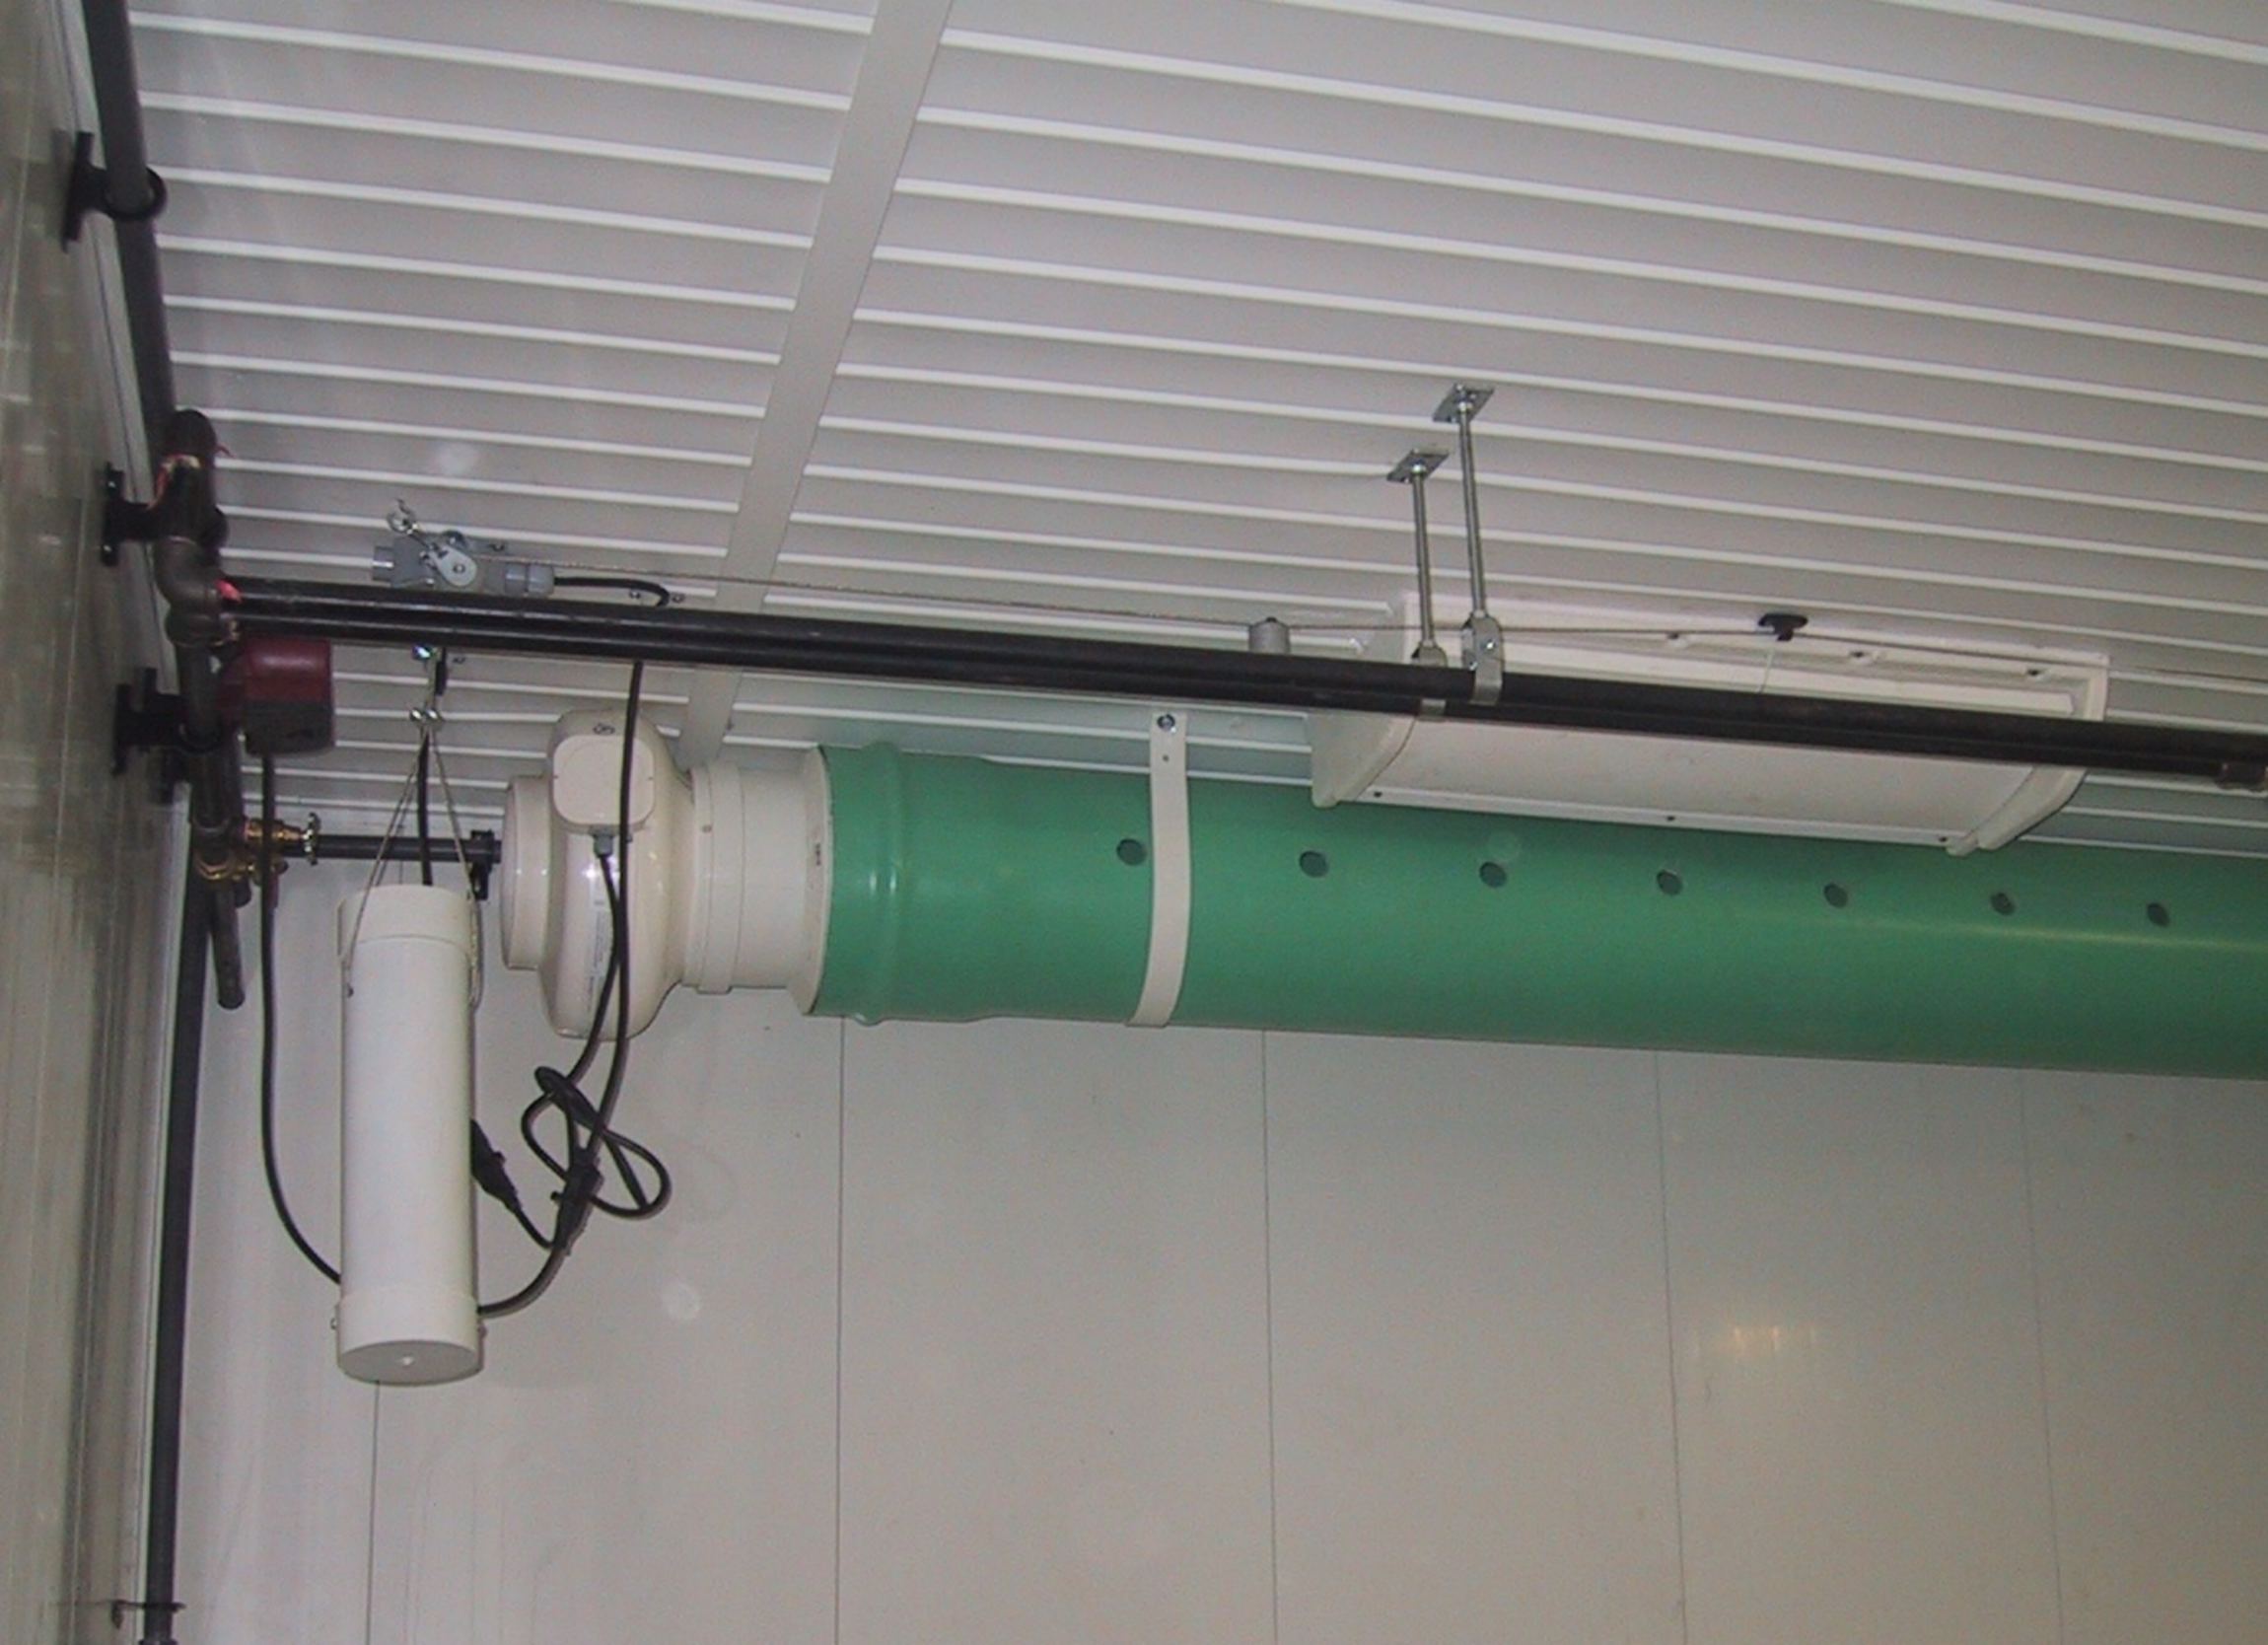 Une installation constituée d’un conduit rigide relié à un ventilateur soufflant et percé de trous de distribution, qui améliore la circulation de l’air.